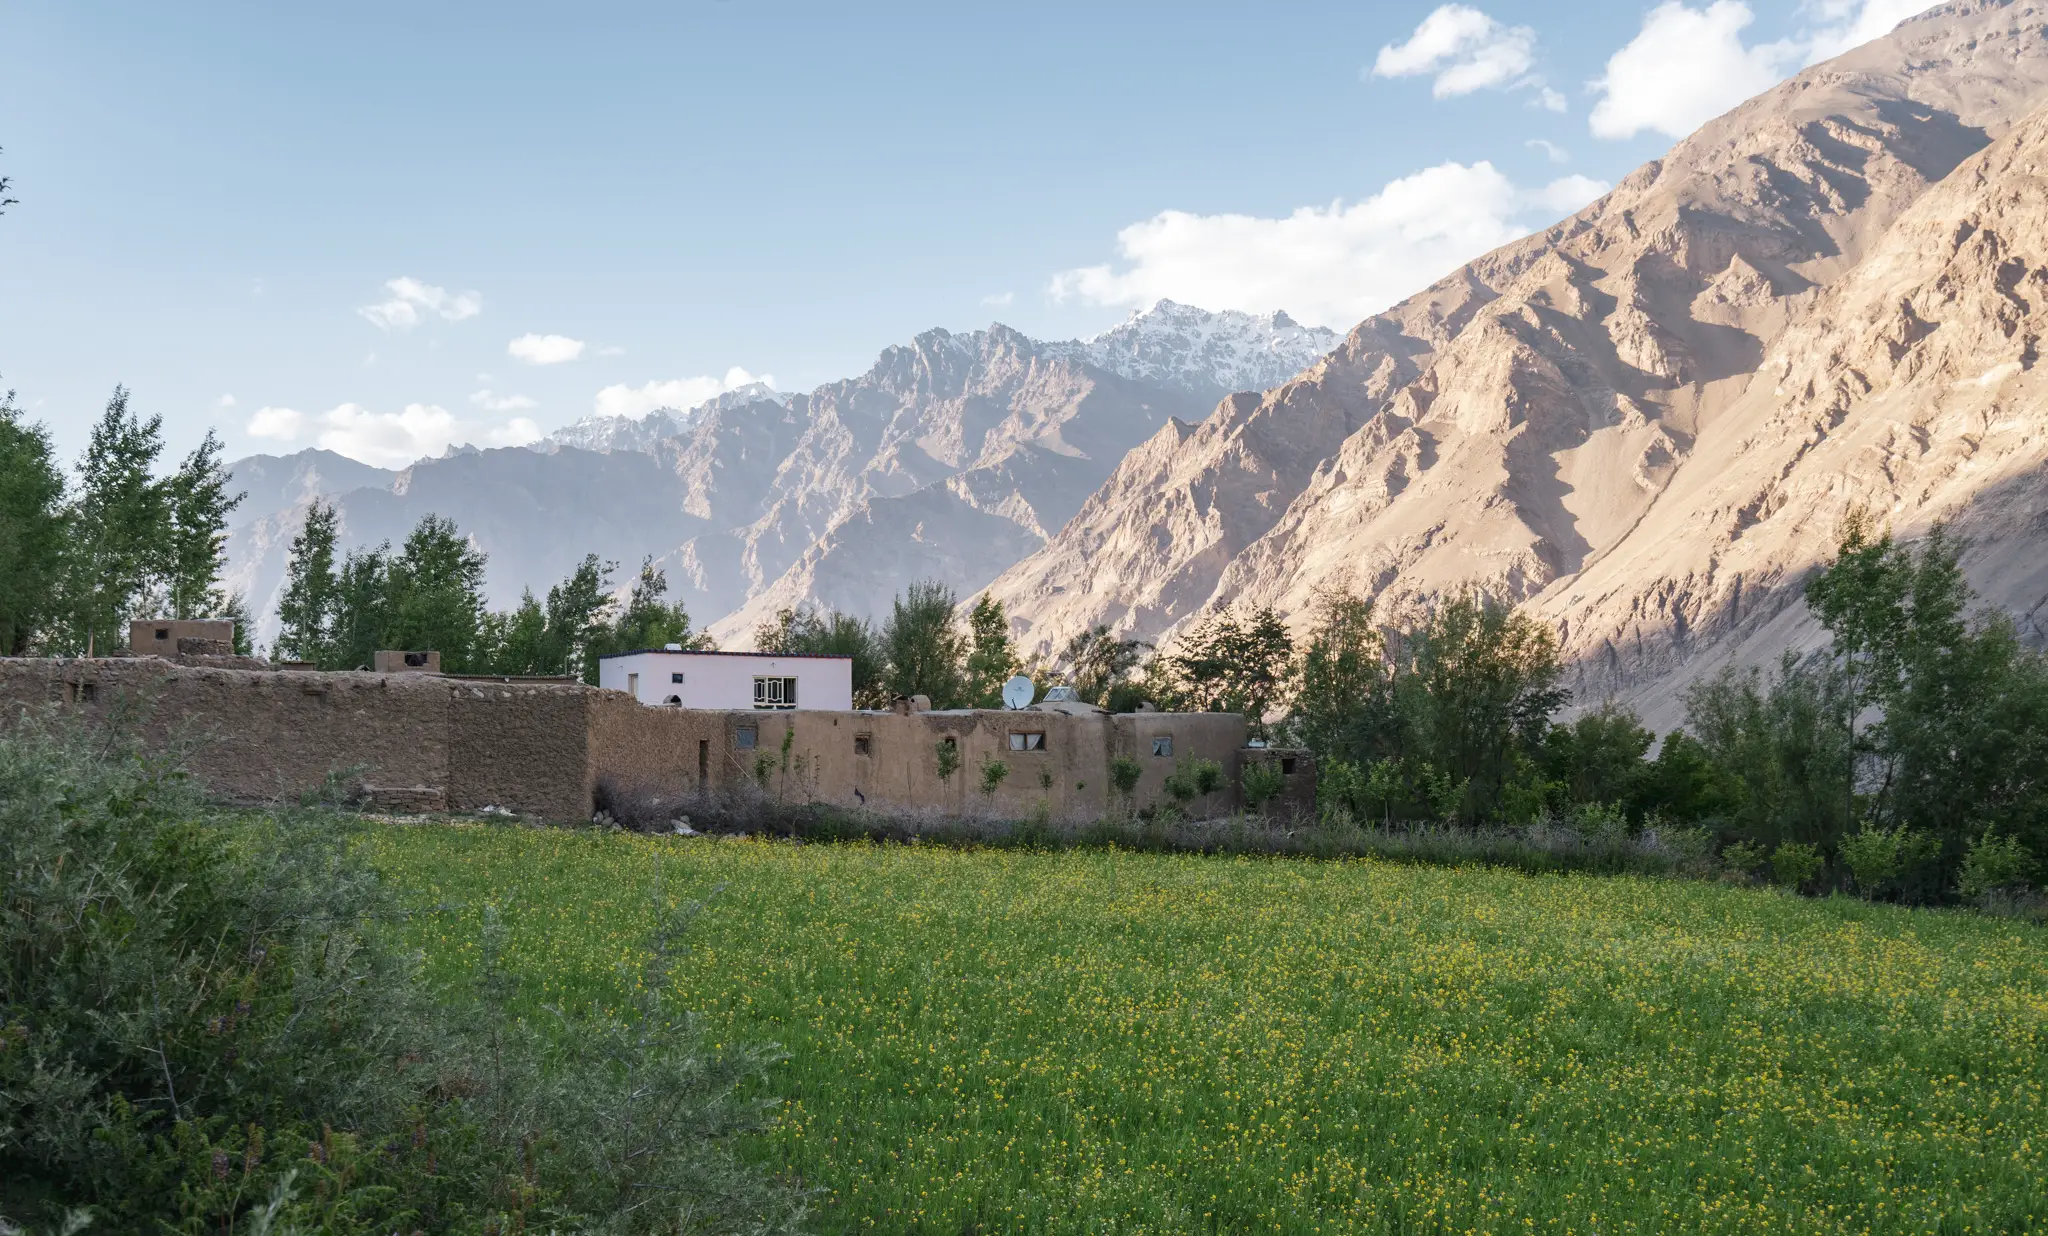 View near Ishkashim in the Wakhan Corridor